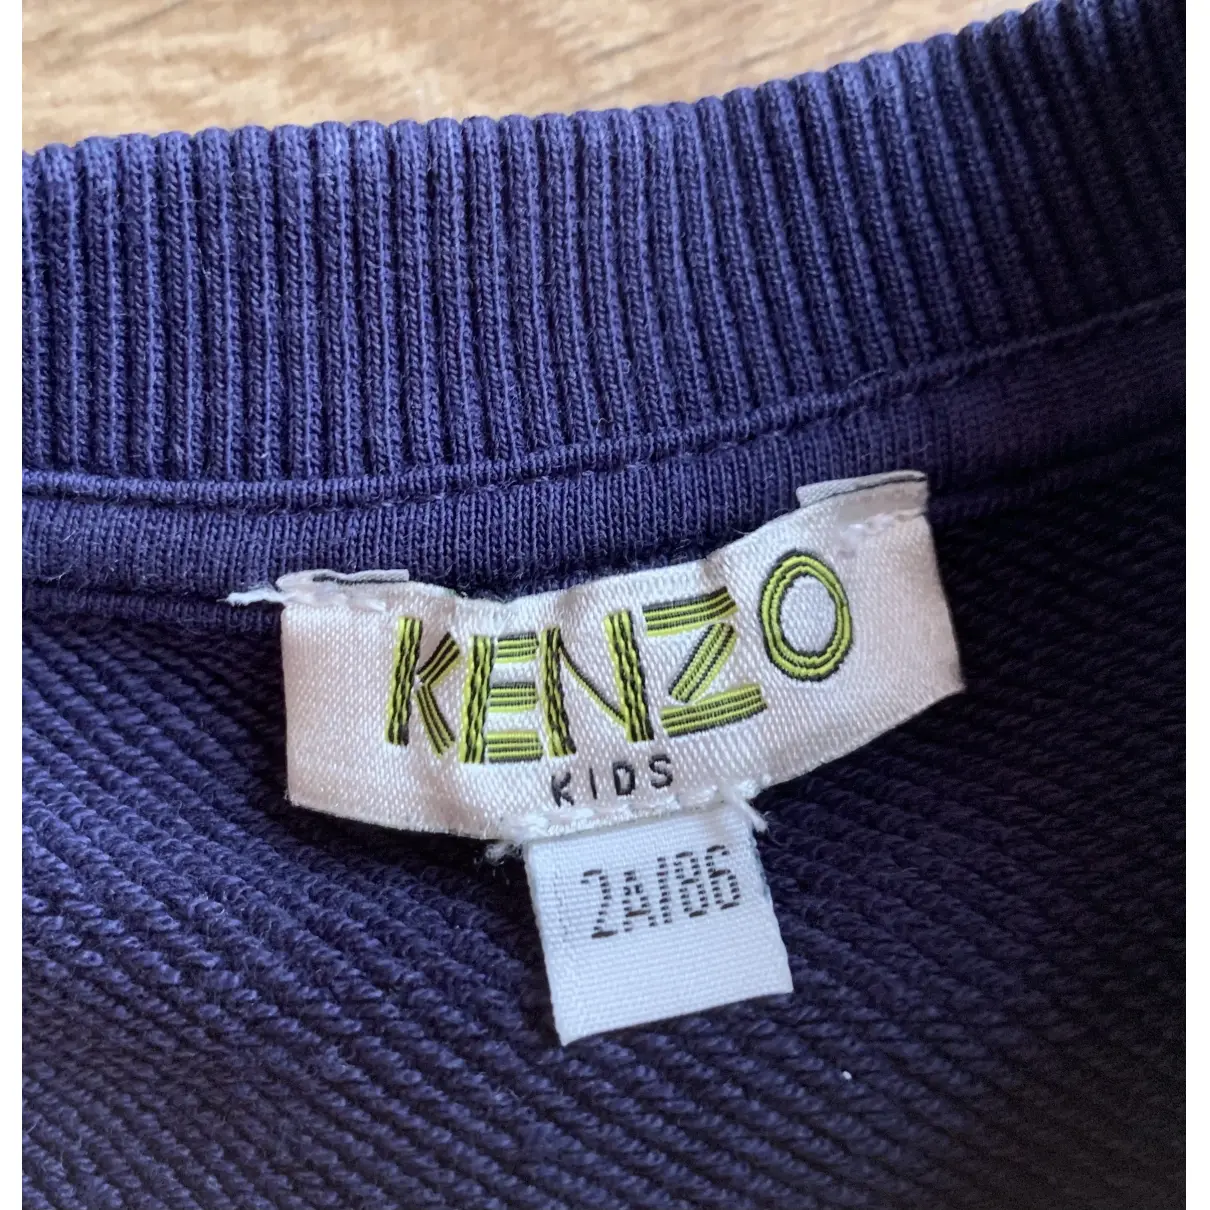 Luxury Kenzo Knitwear Kids